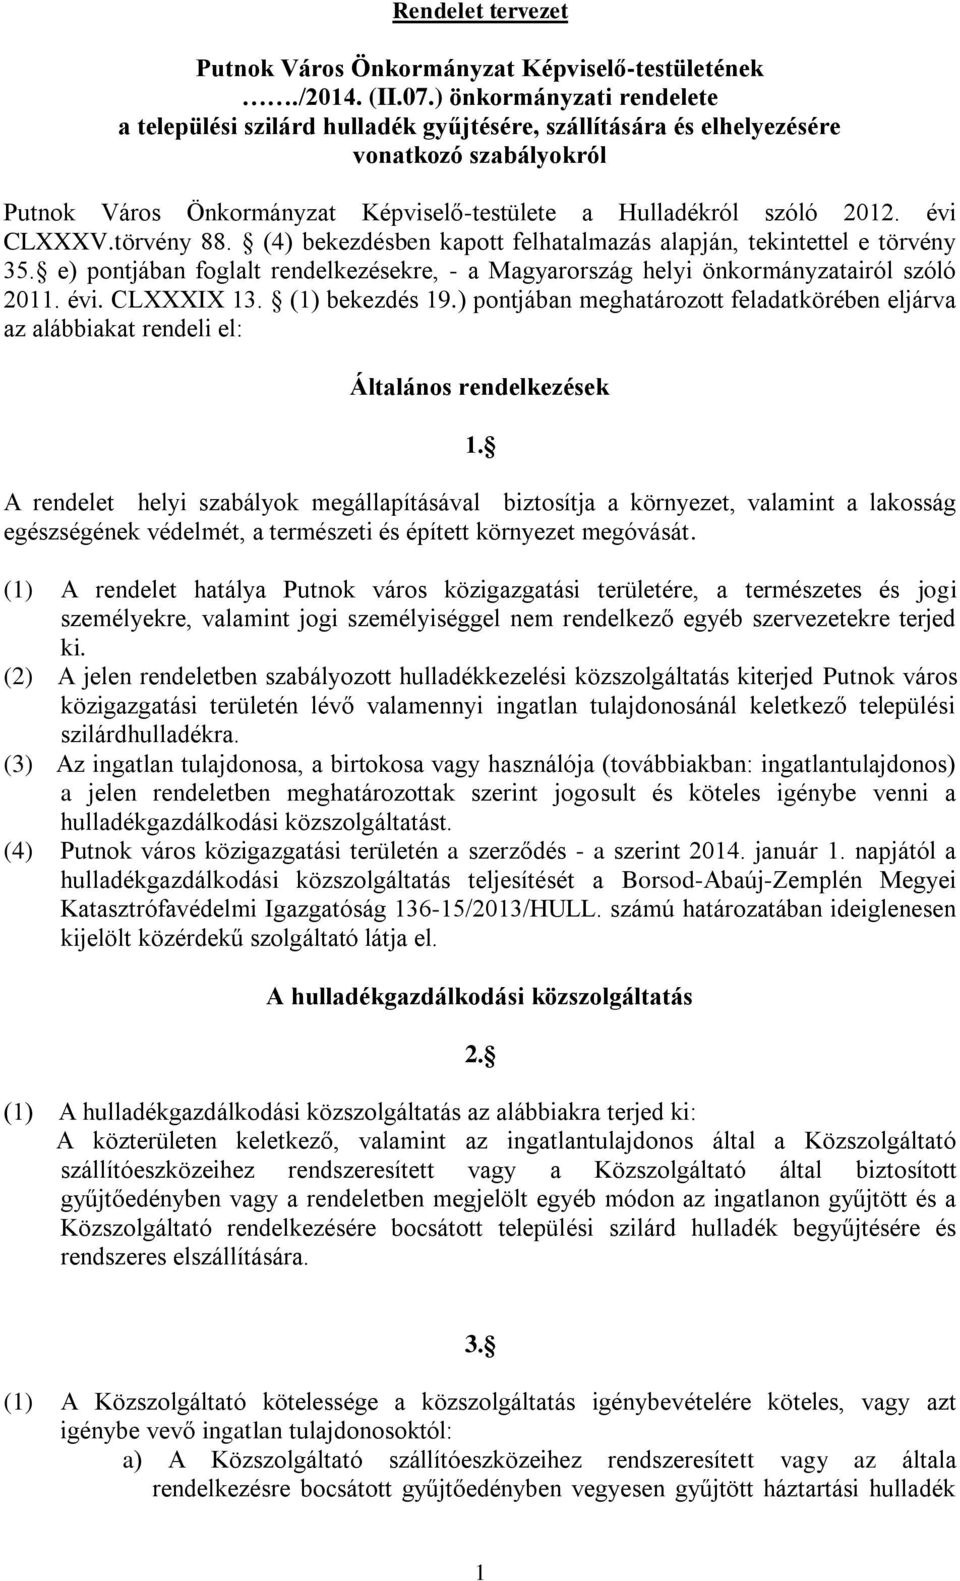 évi CLXXXV.törvény 88. (4) bekezdésben kapott felhatalmazás alapján, tekintettel e törvény 35. e) pontjában foglalt rendelkezésekre, - a Magyarország helyi önkormányzatairól szóló 2011. évi.